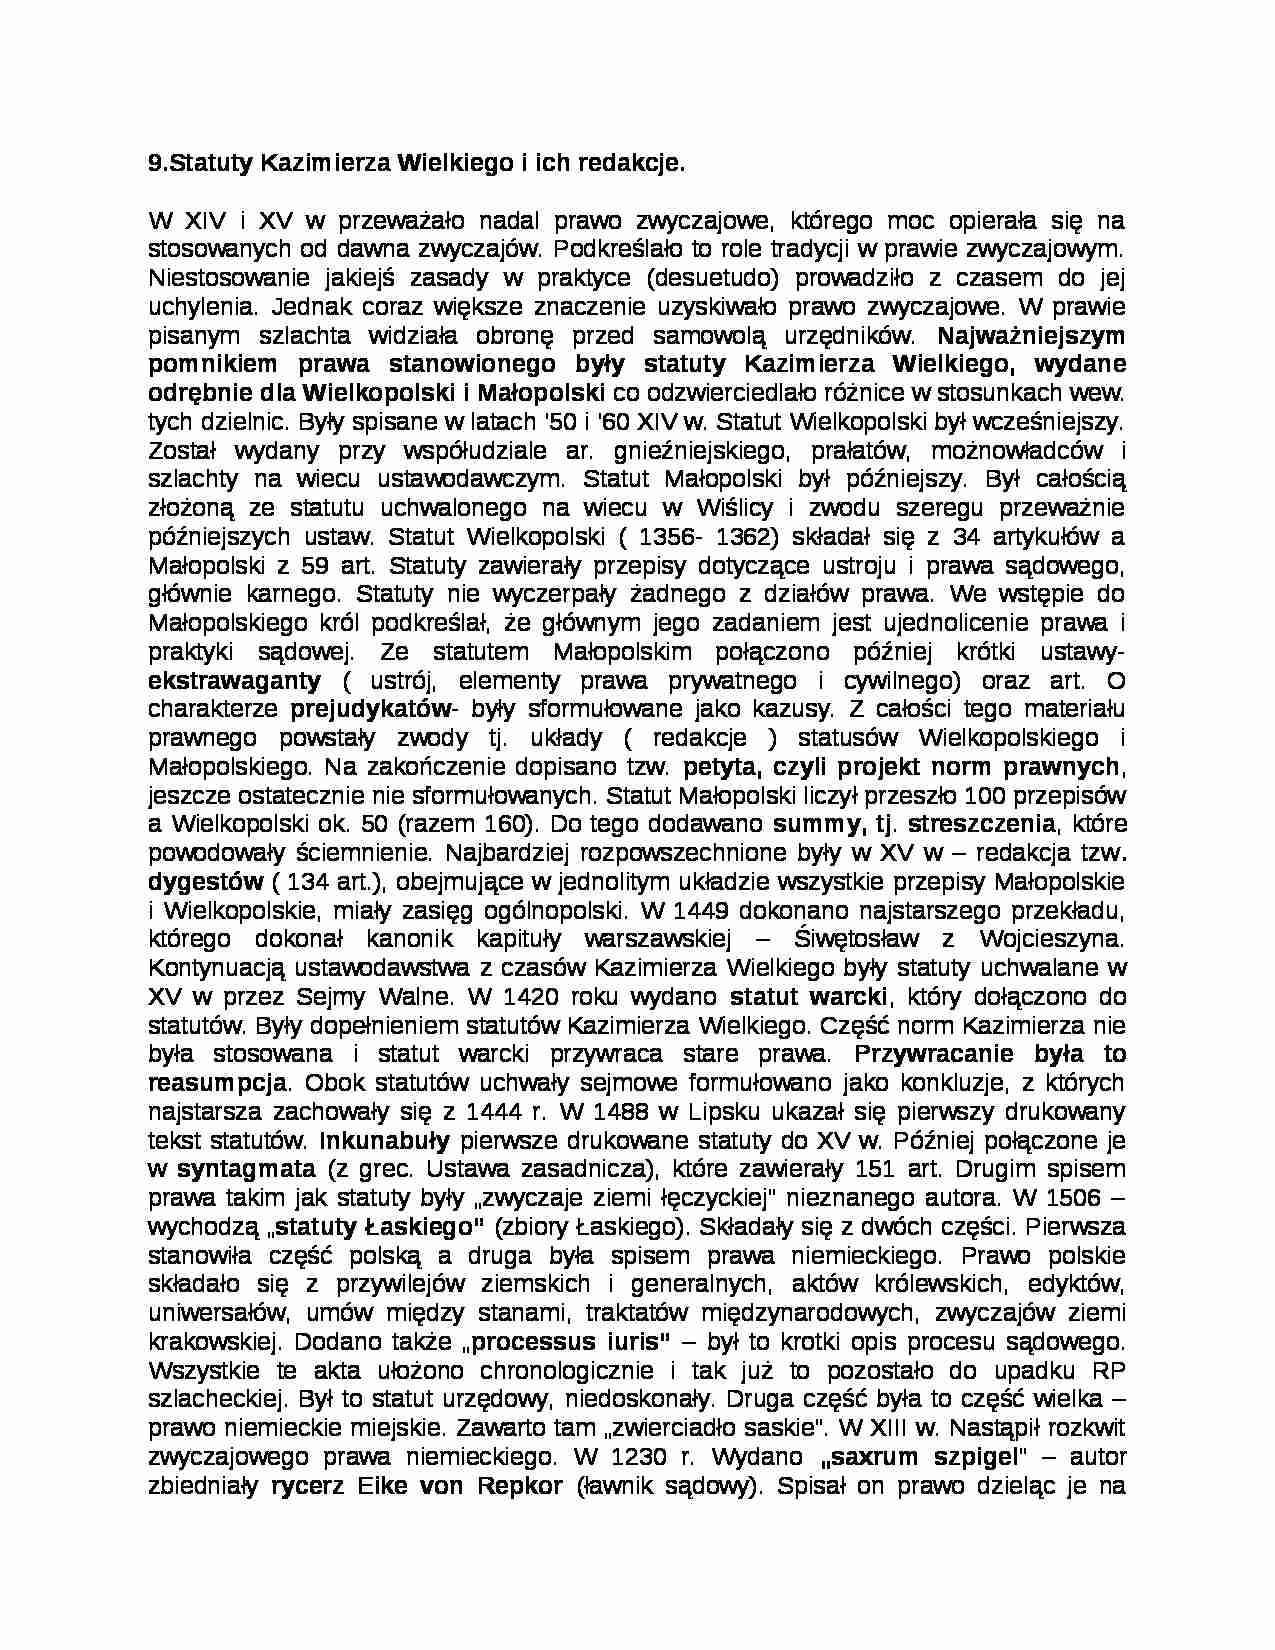 Statuty Kazimierza Wielkiego - strona 1